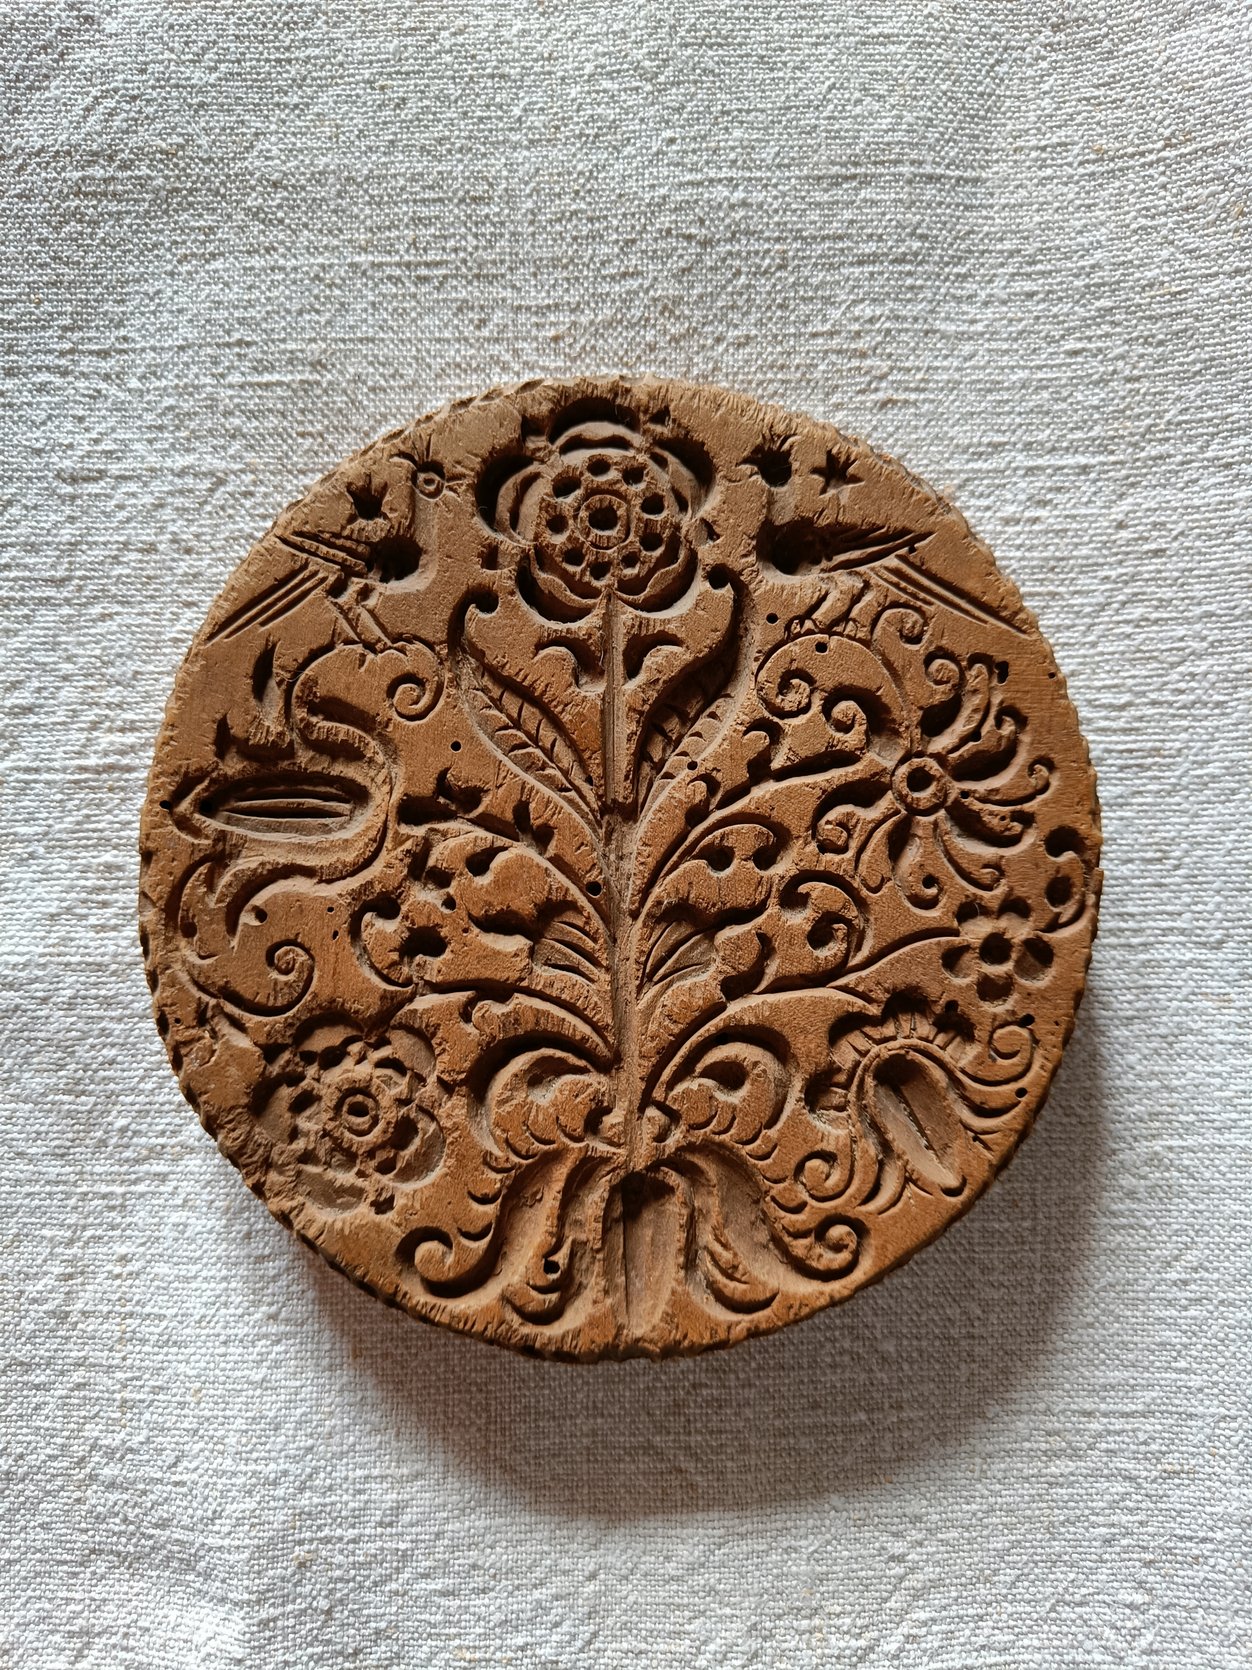 Abbildung eines aus Holz geschnitzten Kuchenmodels.